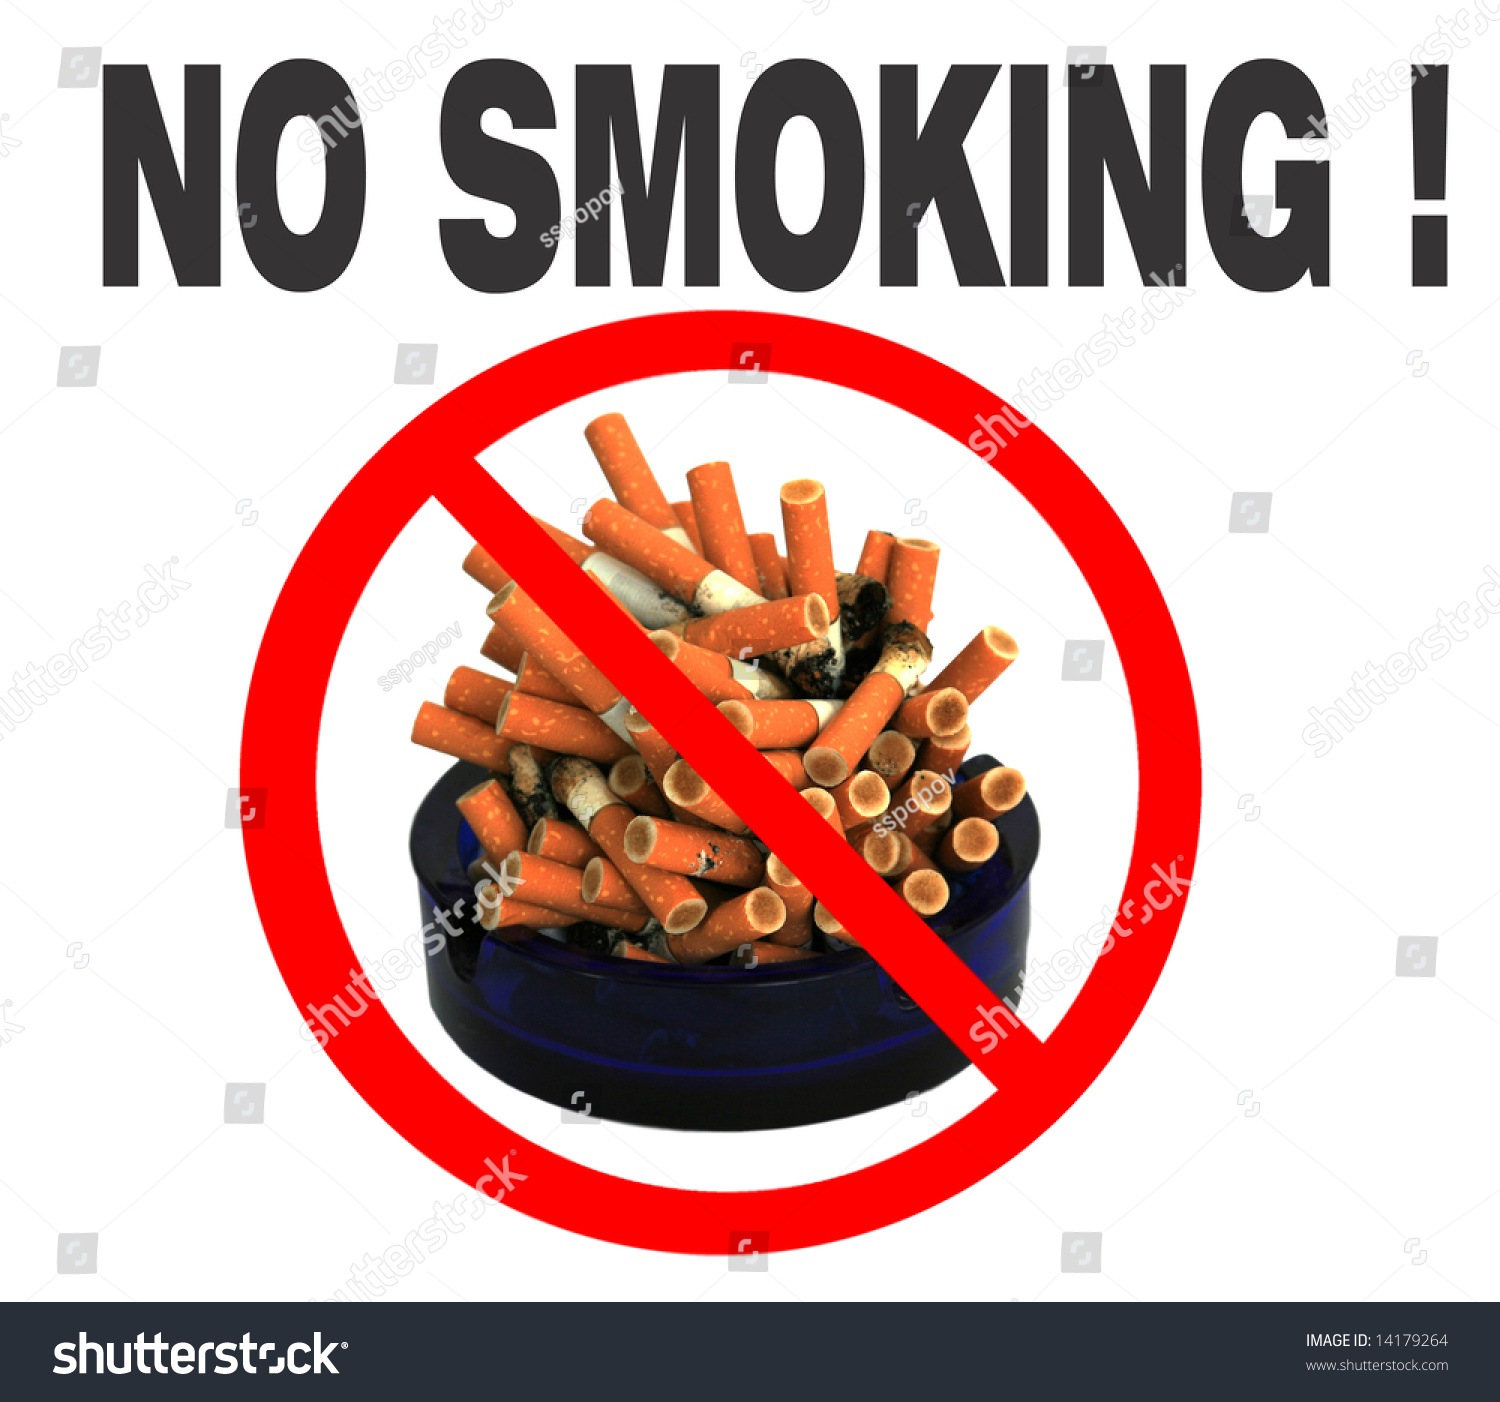 Smoking dangerous habit